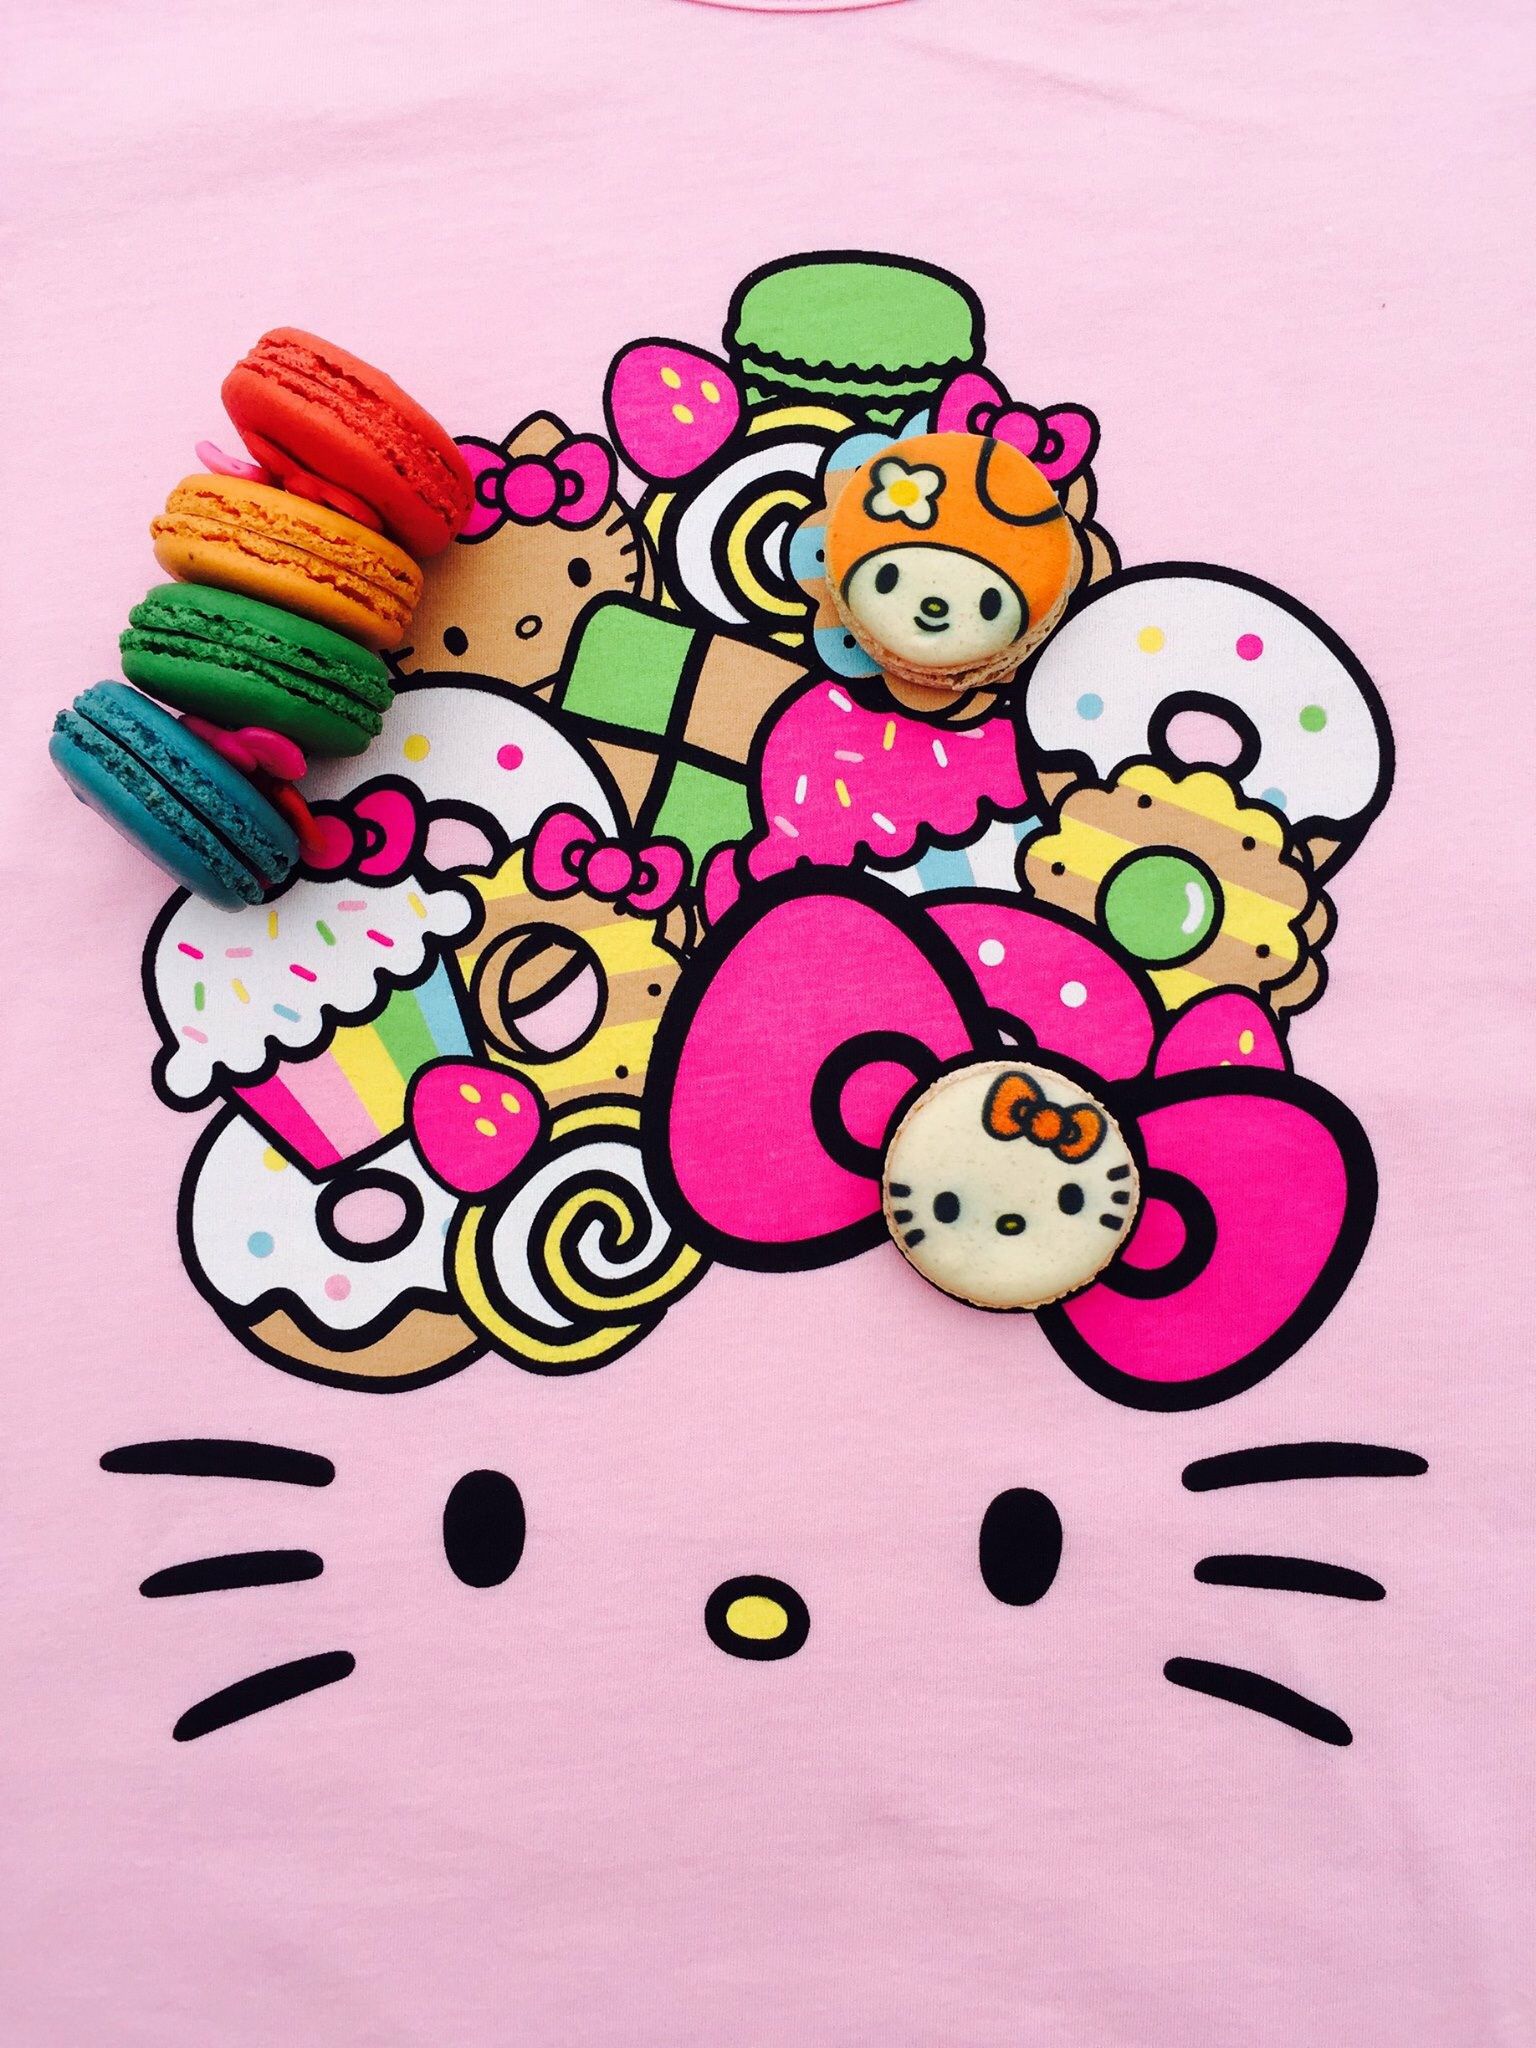 Hello Kitty café USA (*^_^*). Hello kitty wallpaper, Hello kitty, Sanrio hello kitty